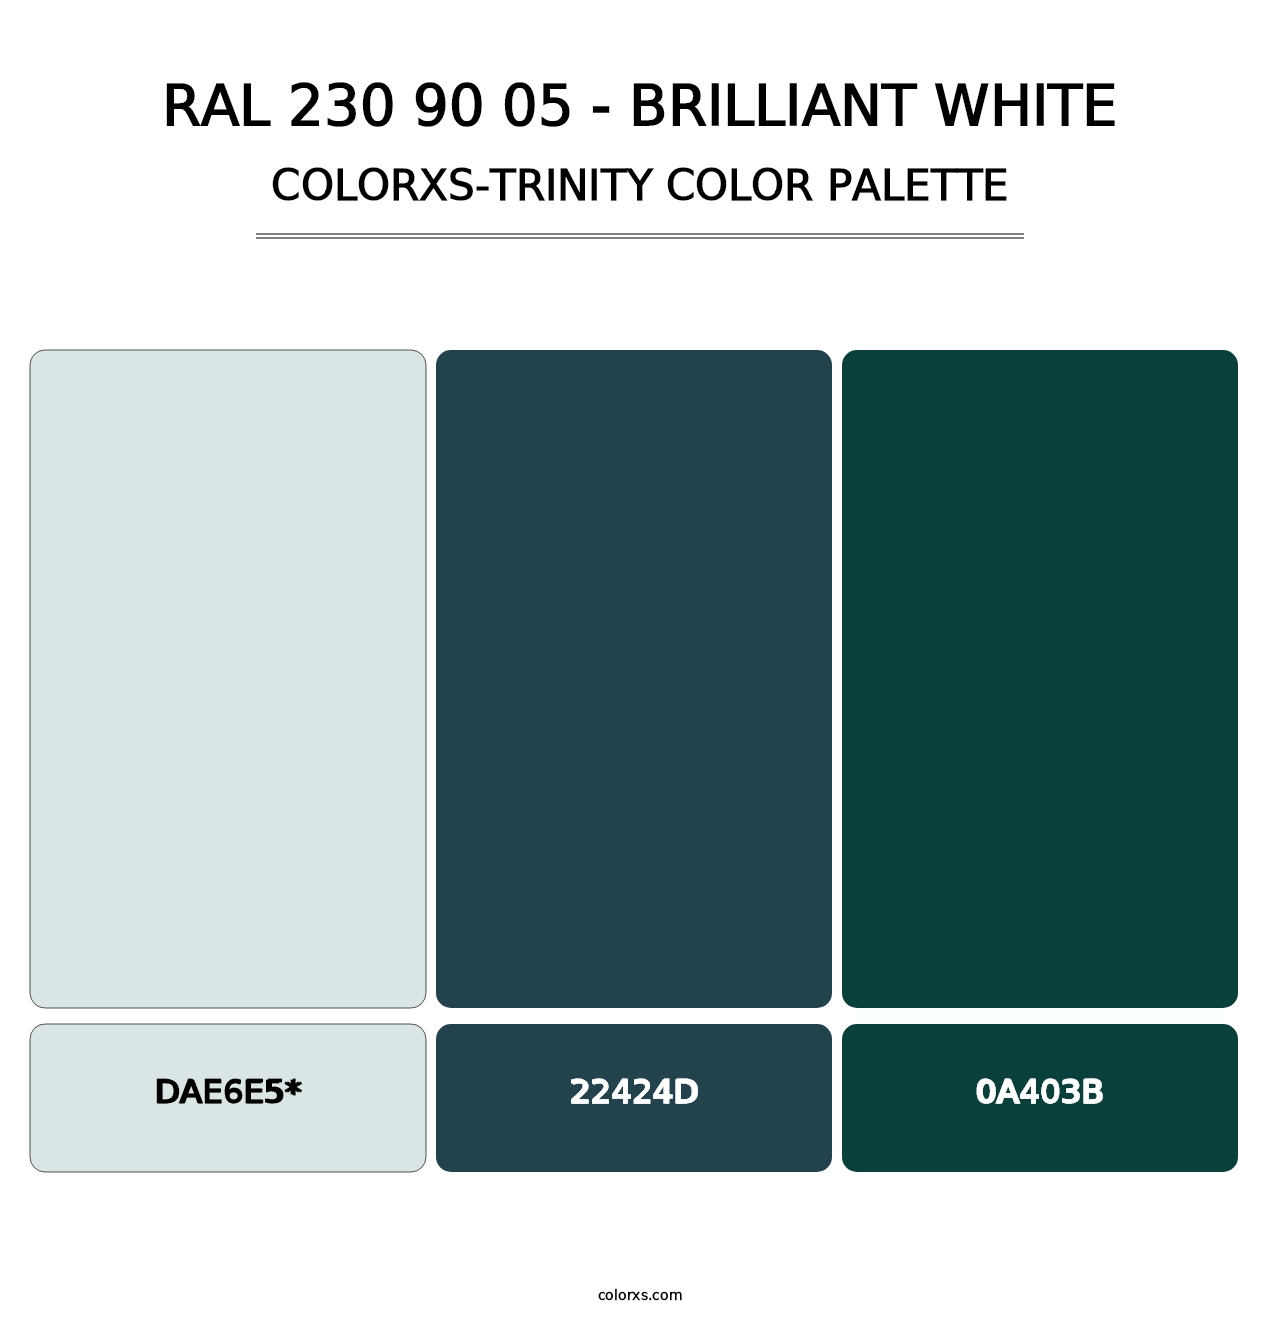 RAL 230 90 05 - Brilliant White - Colorxs Trinity Palette